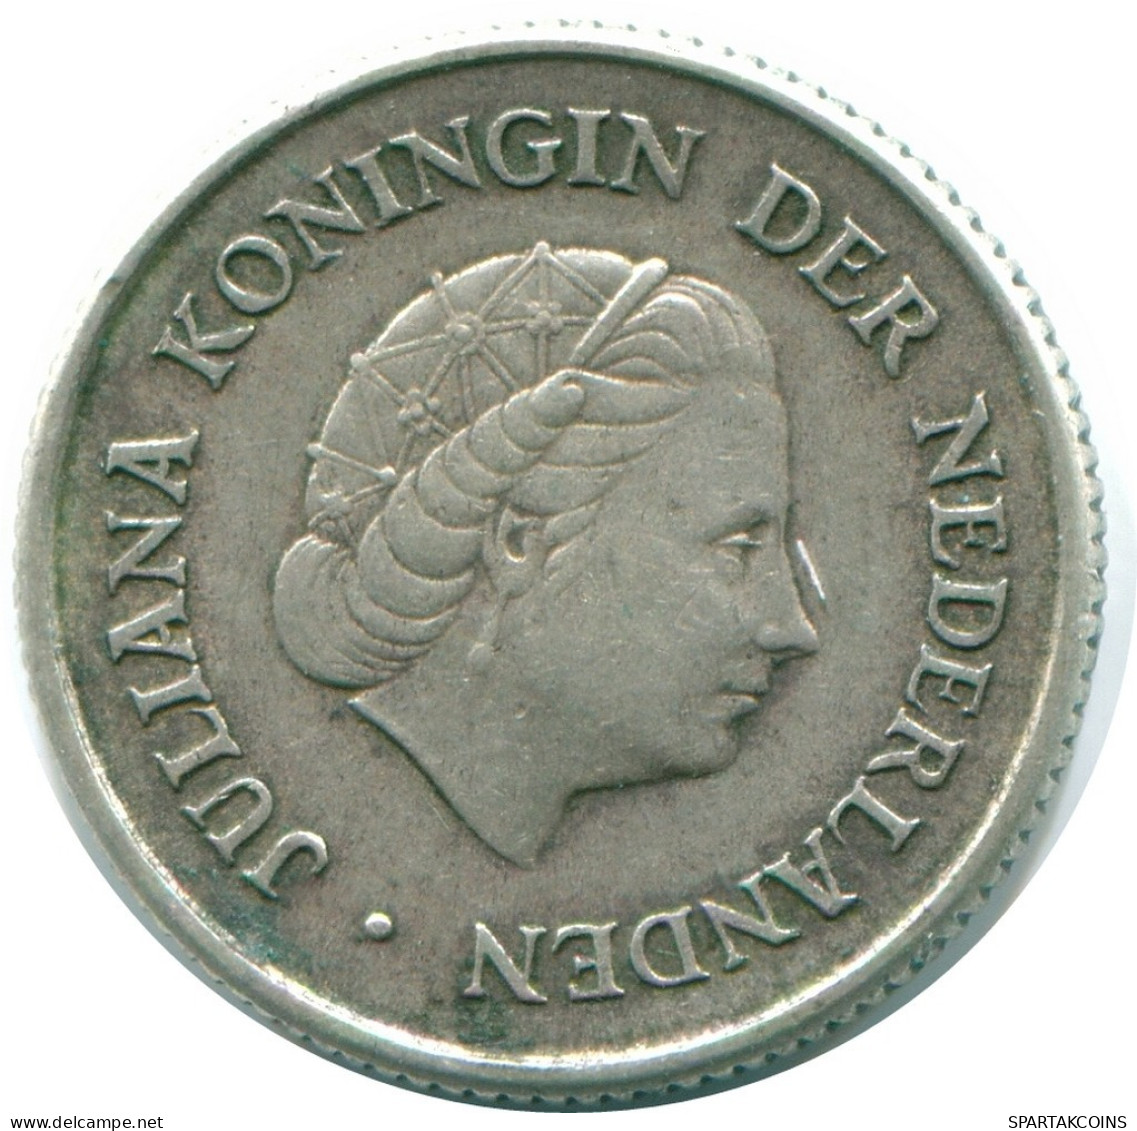 1/4 GULDEN 1967 NIEDERLÄNDISCHE ANTILLEN SILBER Koloniale Münze #NL11590.4.D.A - Antilles Néerlandaises